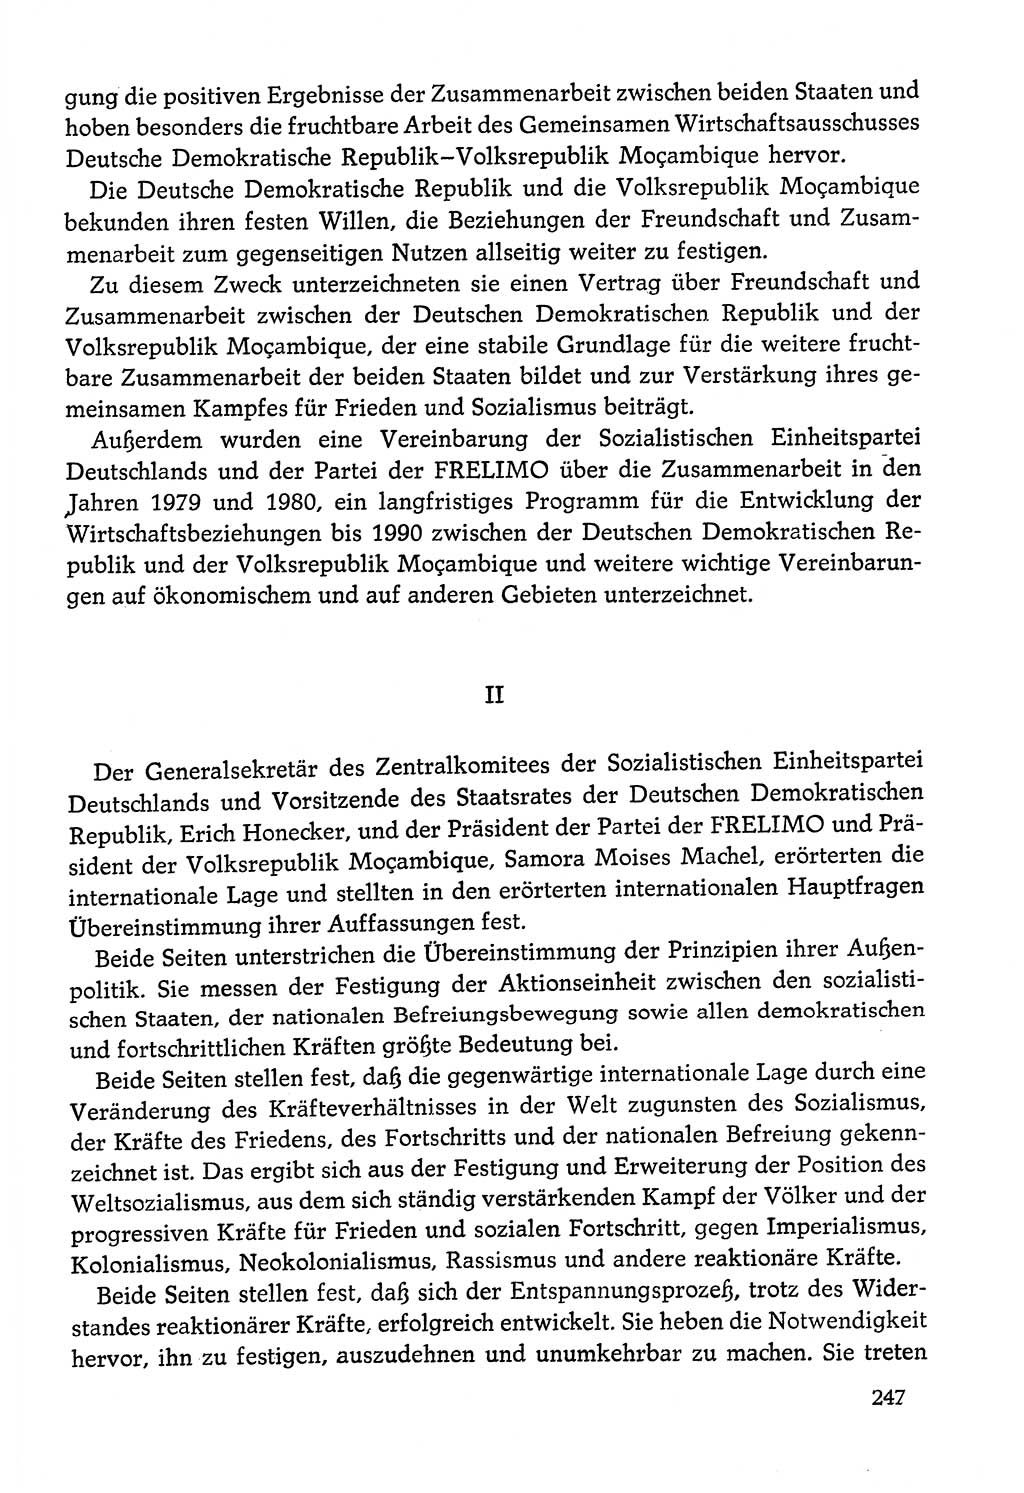 Dokumente der Sozialistischen Einheitspartei Deutschlands (SED) [Deutsche Demokratische Republik (DDR)] 1978-1979, Seite 247 (Dok. SED DDR 1978-1979, S. 247)